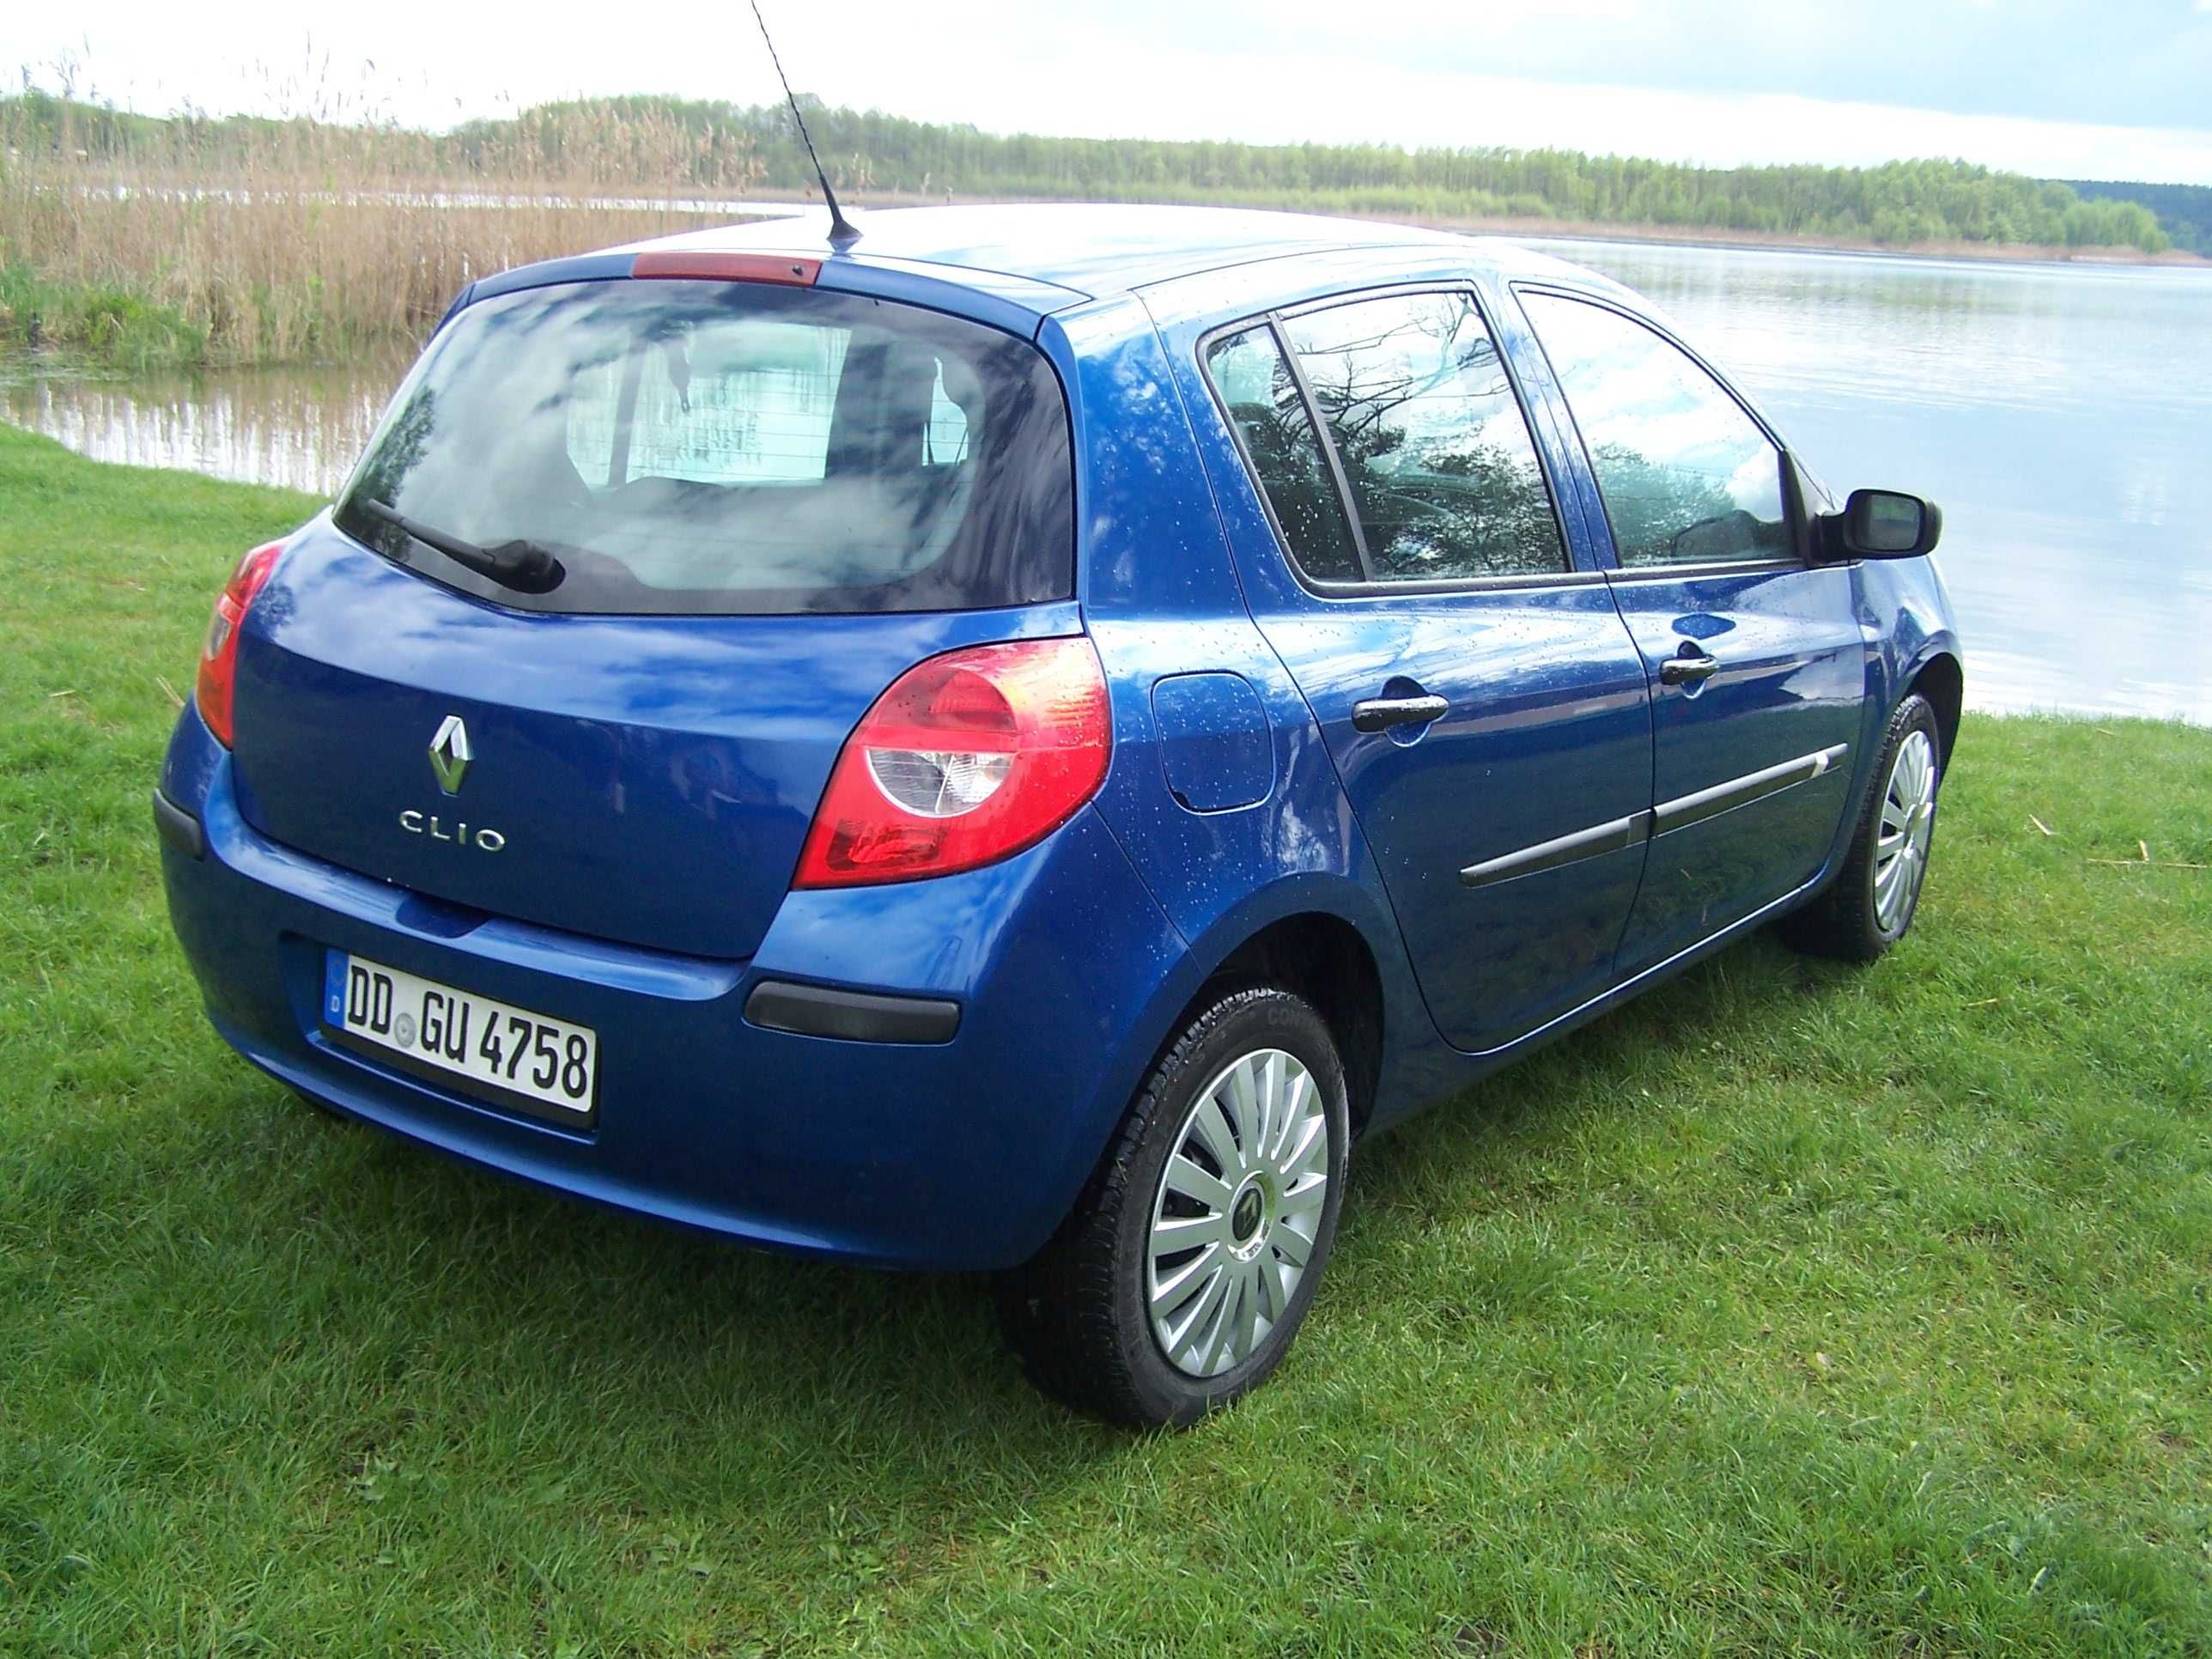 Renault Clio 1.2 2008r. KLIMATYZACJA -sprowadzony.